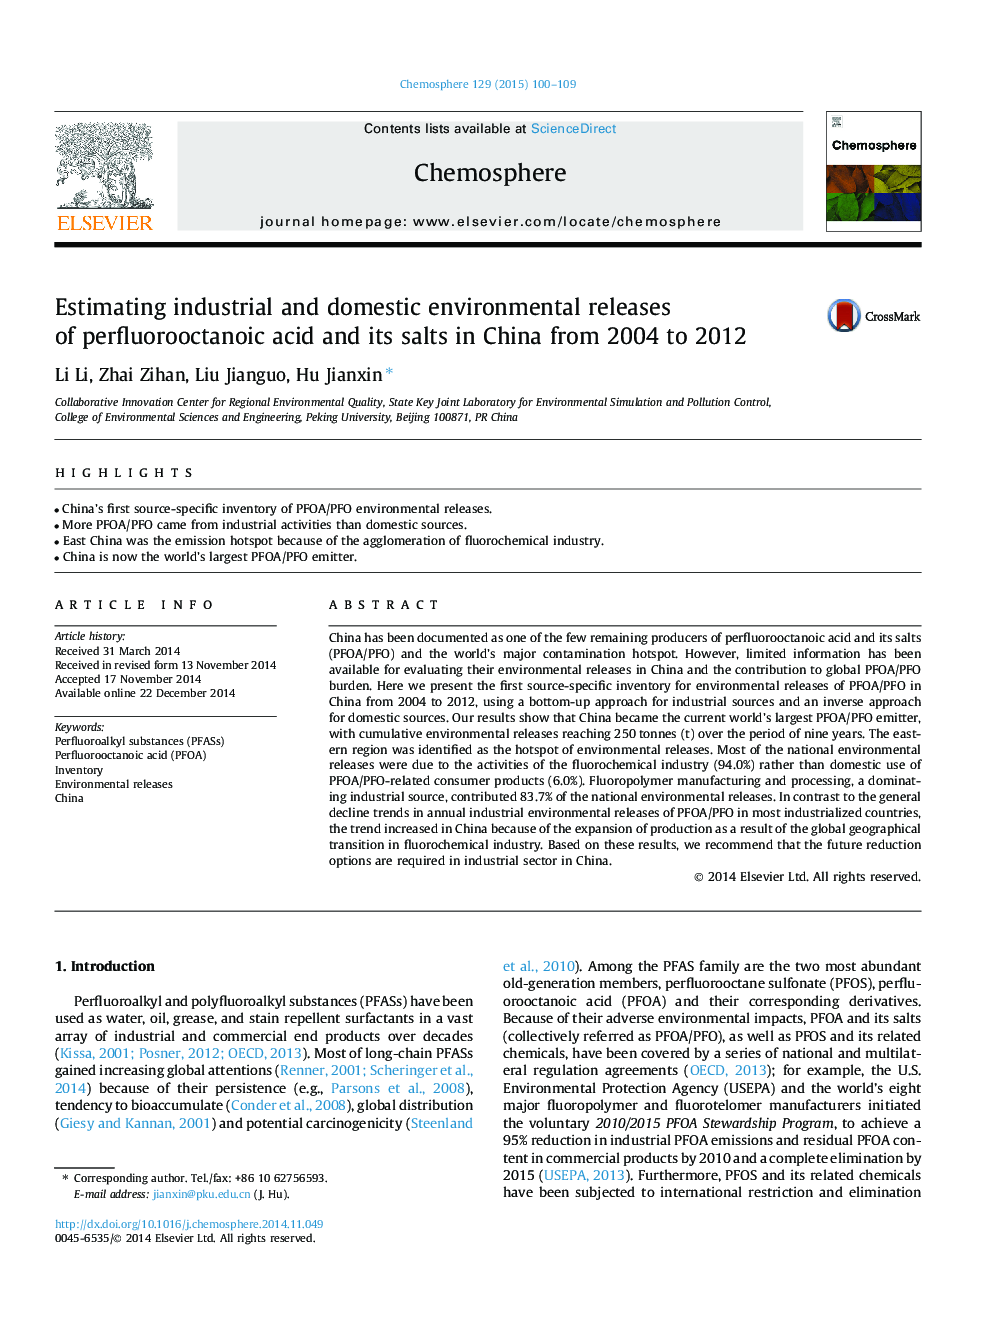 برآورد انتشارات صنعتی و داخلی محیطی اسید پرفلووروکاتانیک و نمکهای آن در چین از سالهای 2004 تا 2012 